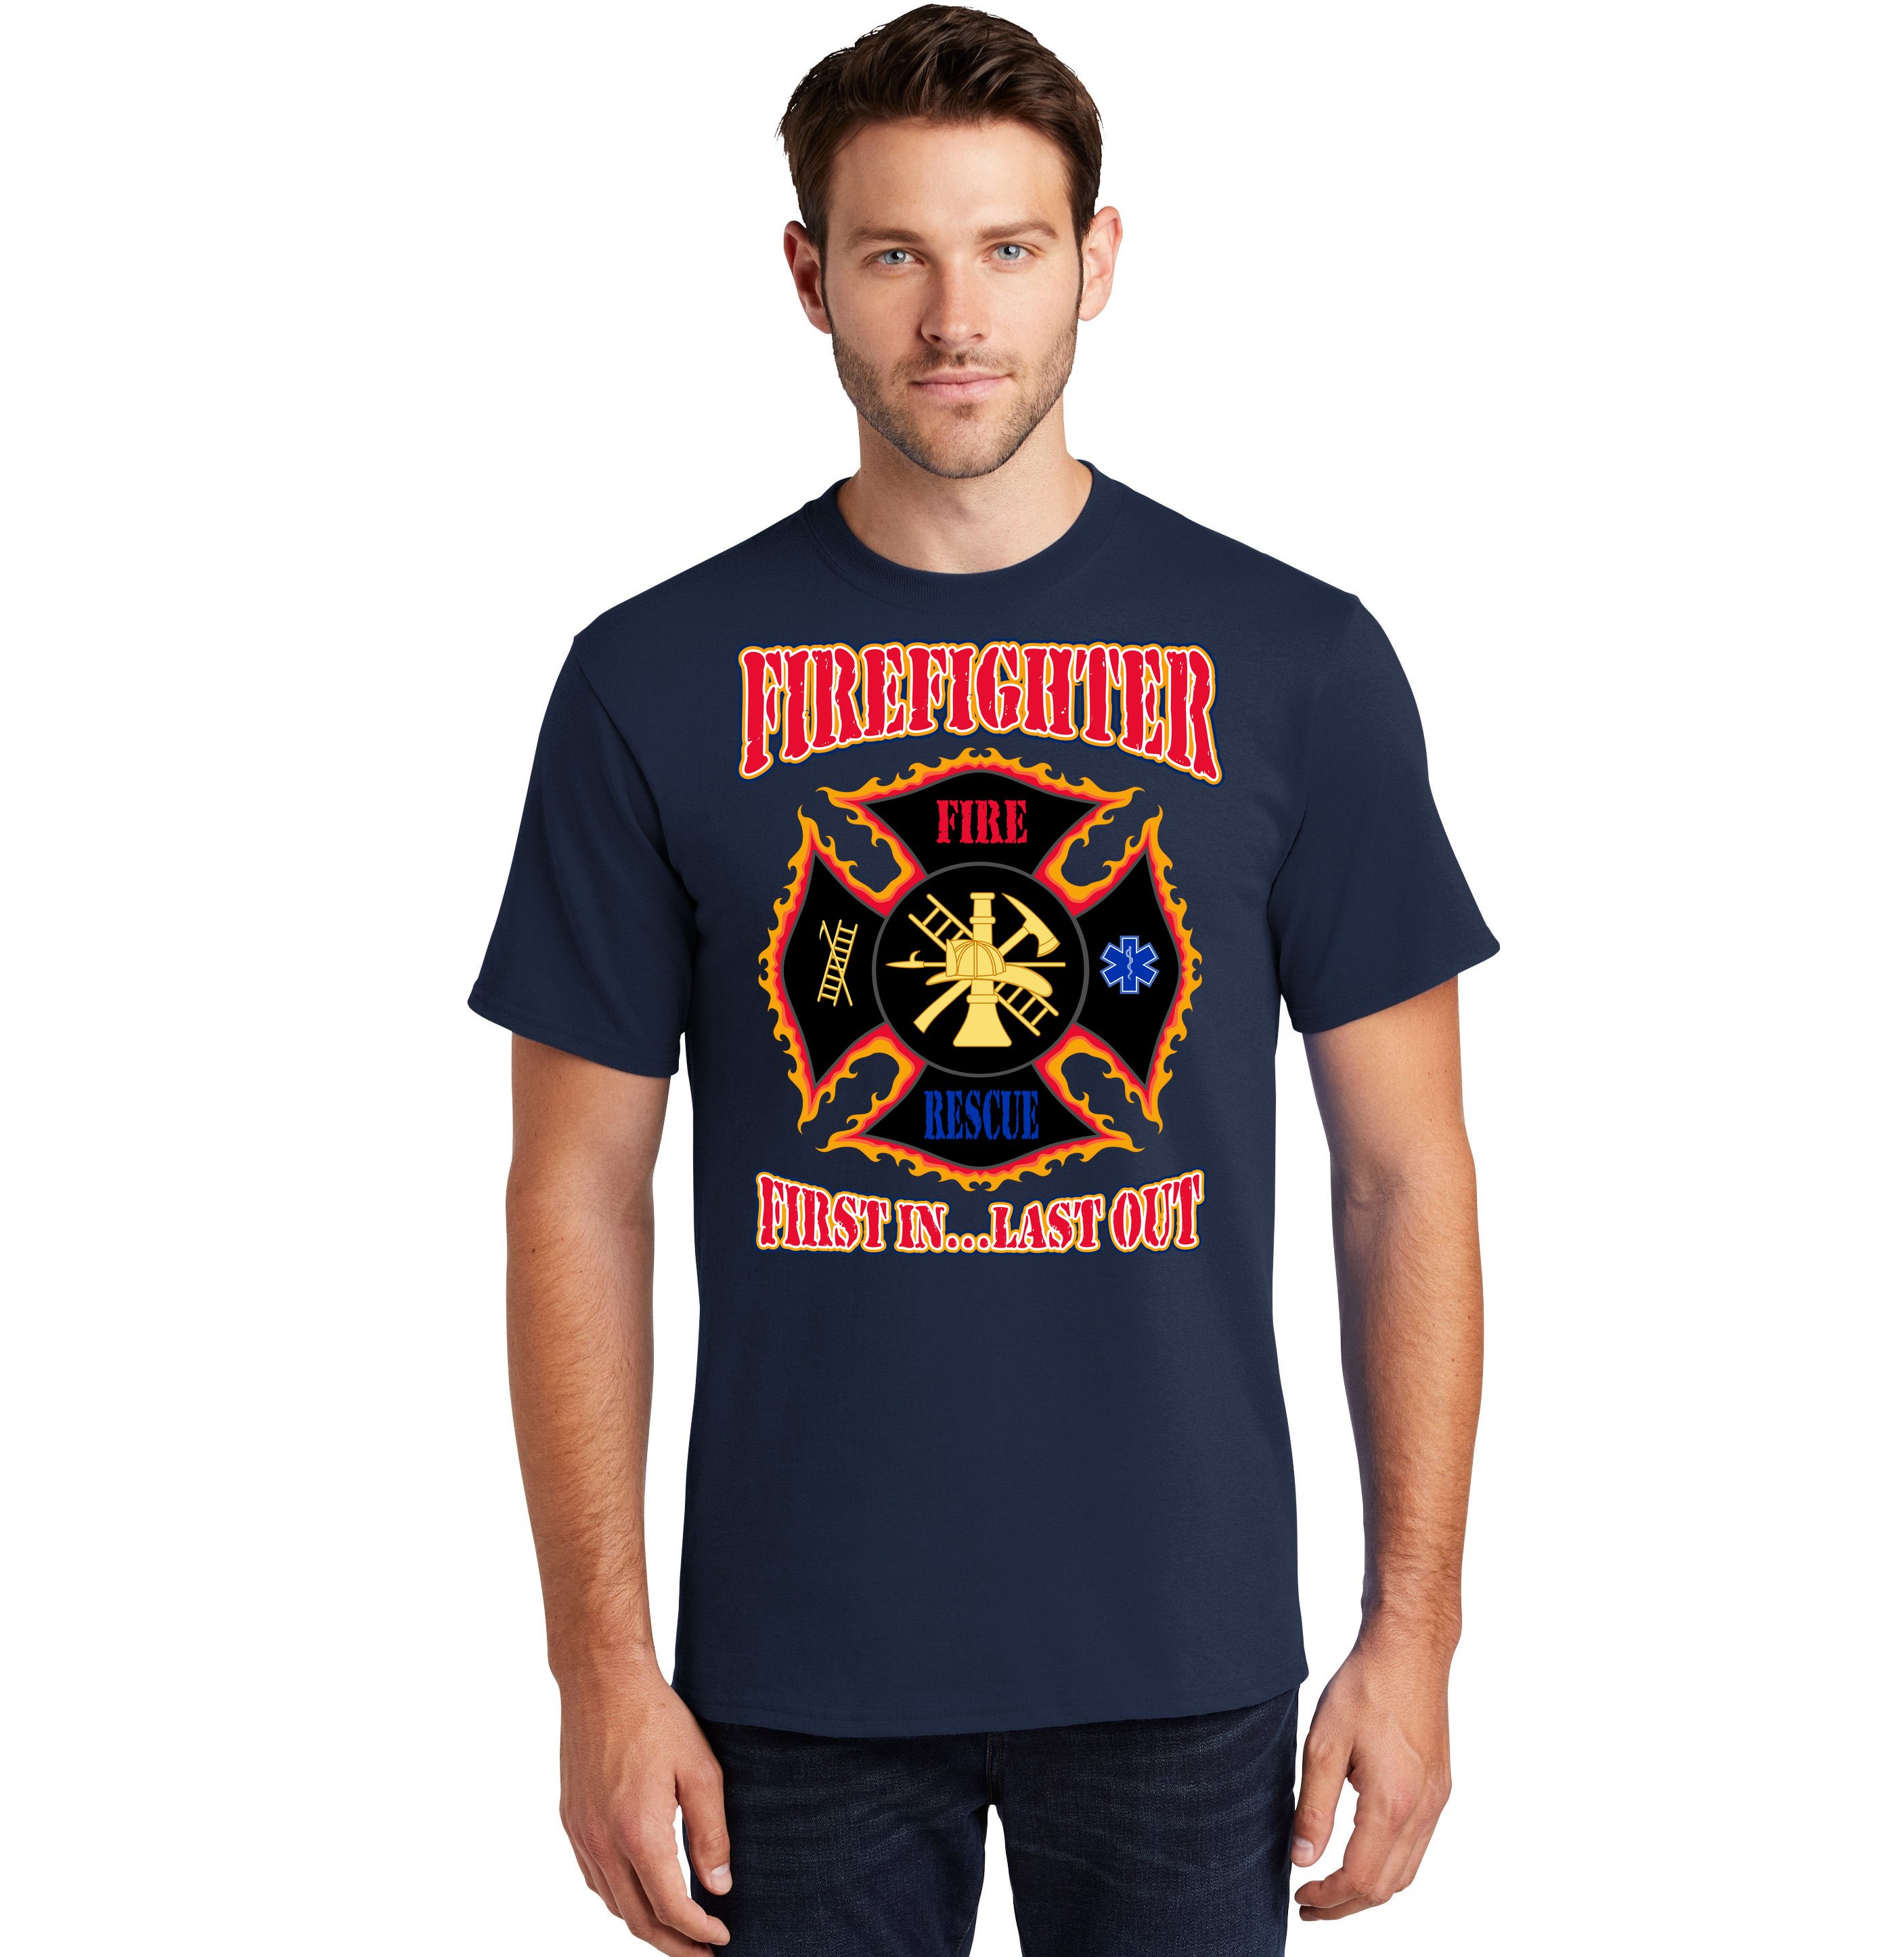 New Orange City Florida Fire Department Firefighter Navy T-Shirt S-4XL